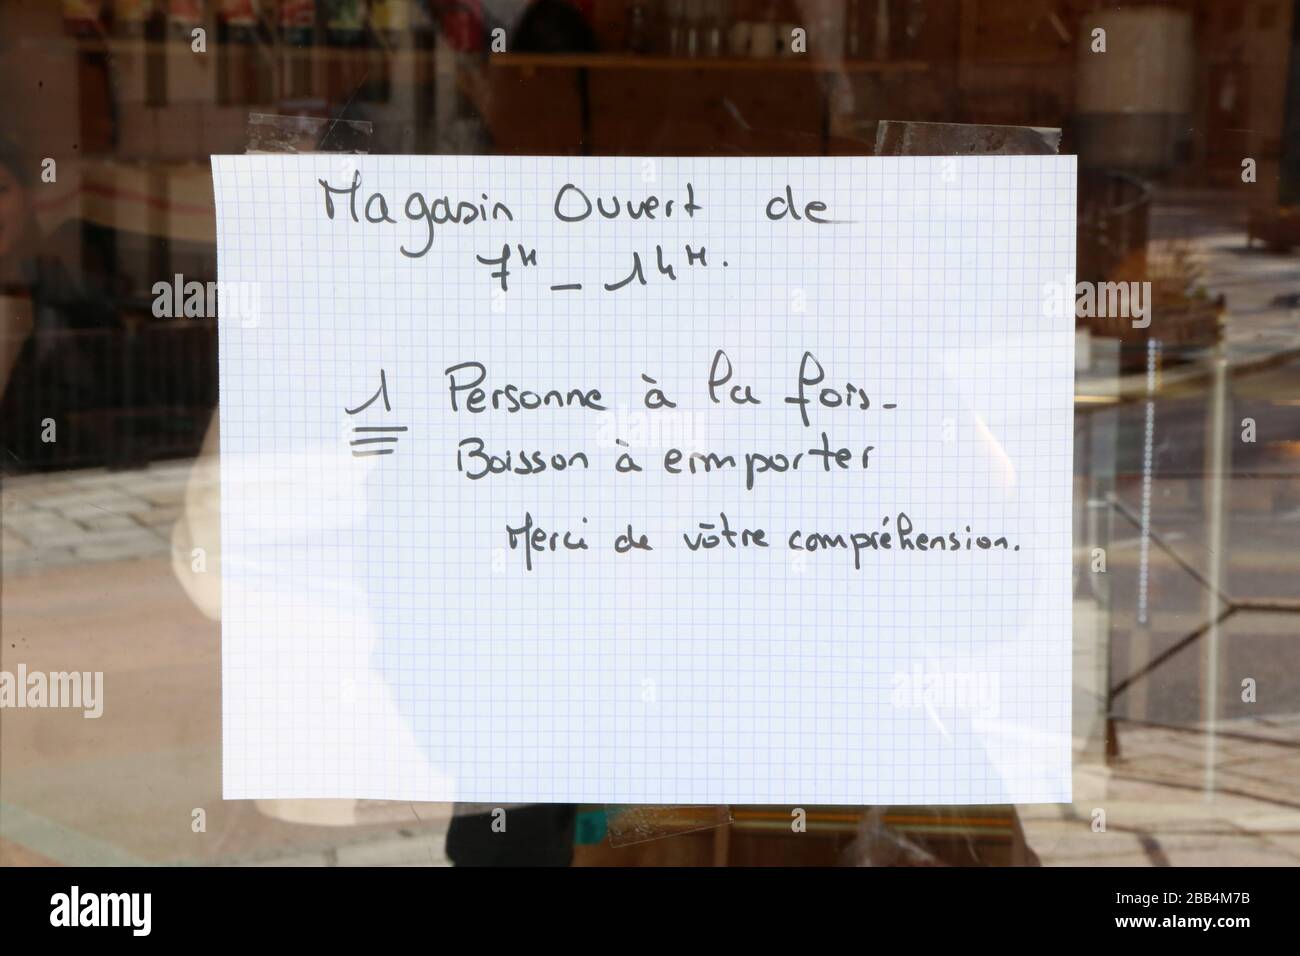 Affiche : magasin ouvert de 7h à 14h. Une personne à la fois. Boissons à emporter. Covid19. Haute-Savoie. France. Stock Photo